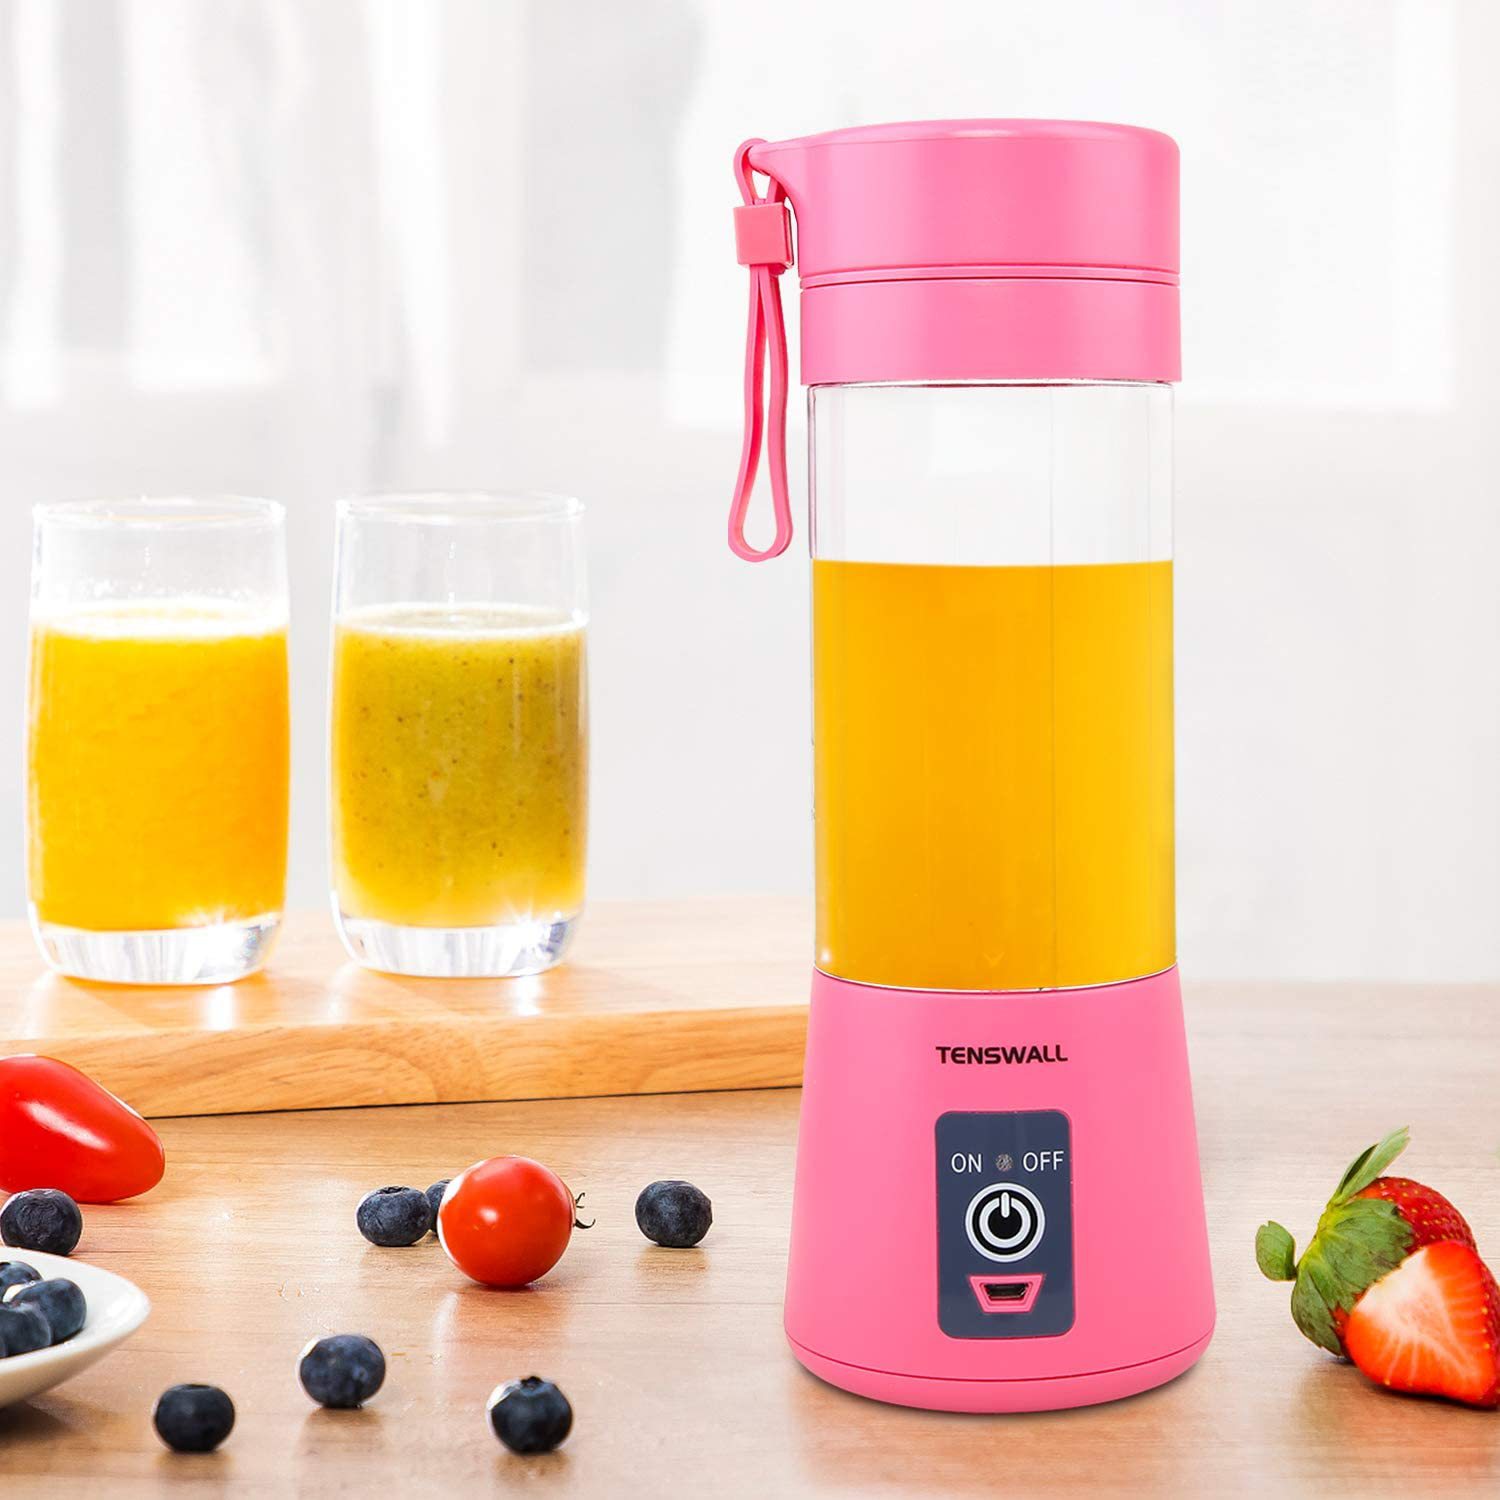 Mini mixeur électrique portable Ju479, chargement USB, pour fruits, orange, citron, milkshake, cuisine, presse-agrumes automatique